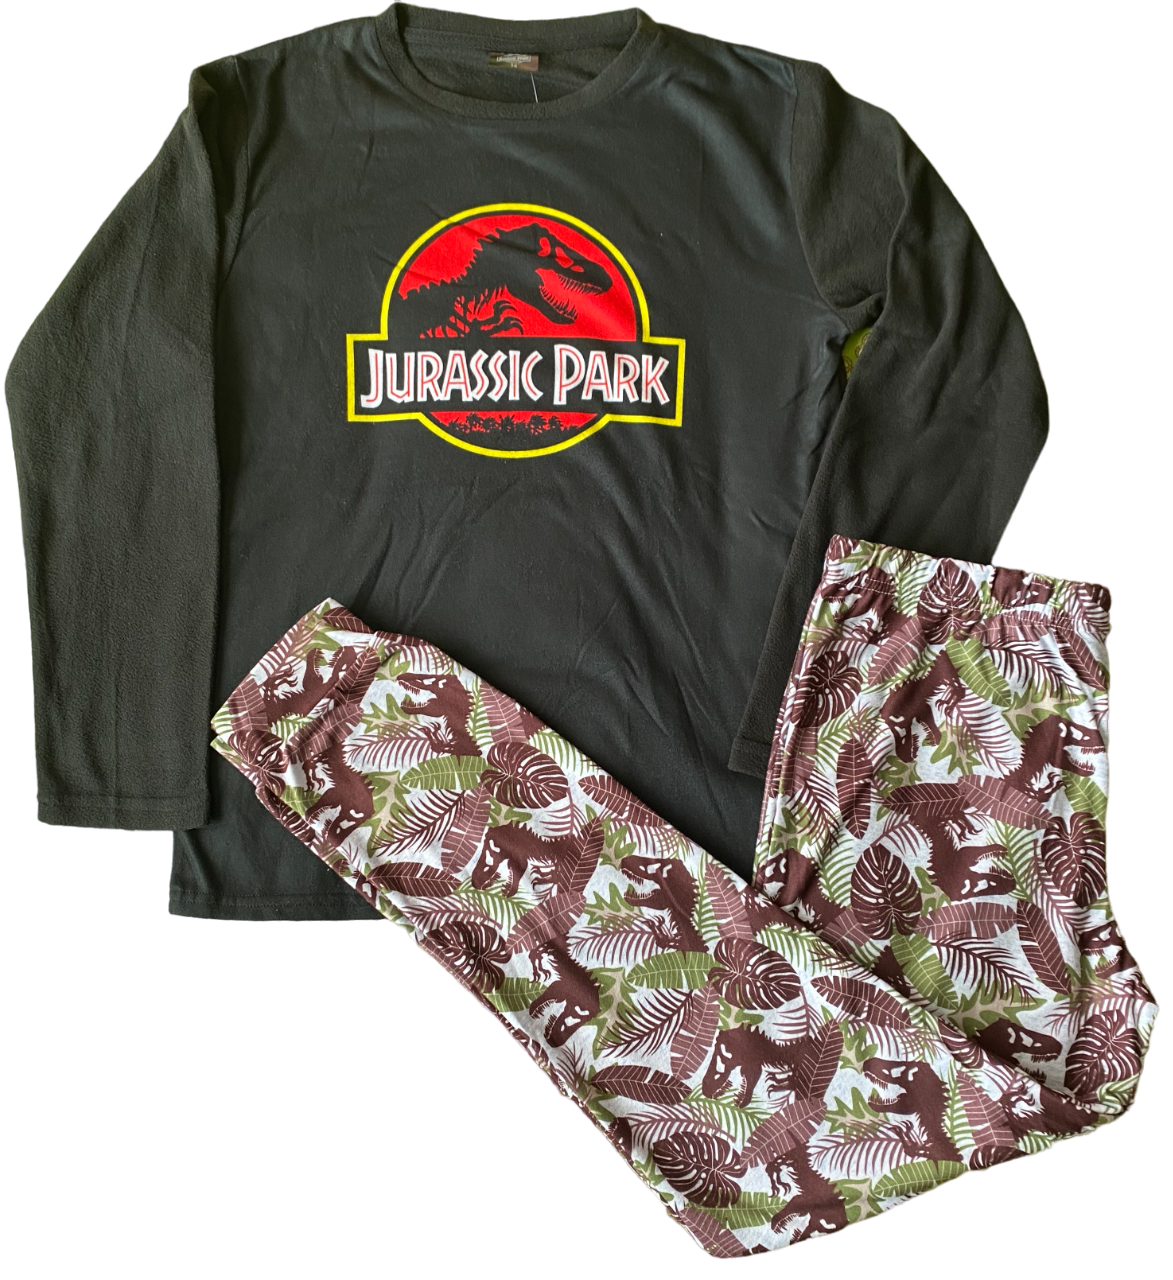 Pijama Jurassic Park Talla 14 – Mandarina S.P.A.